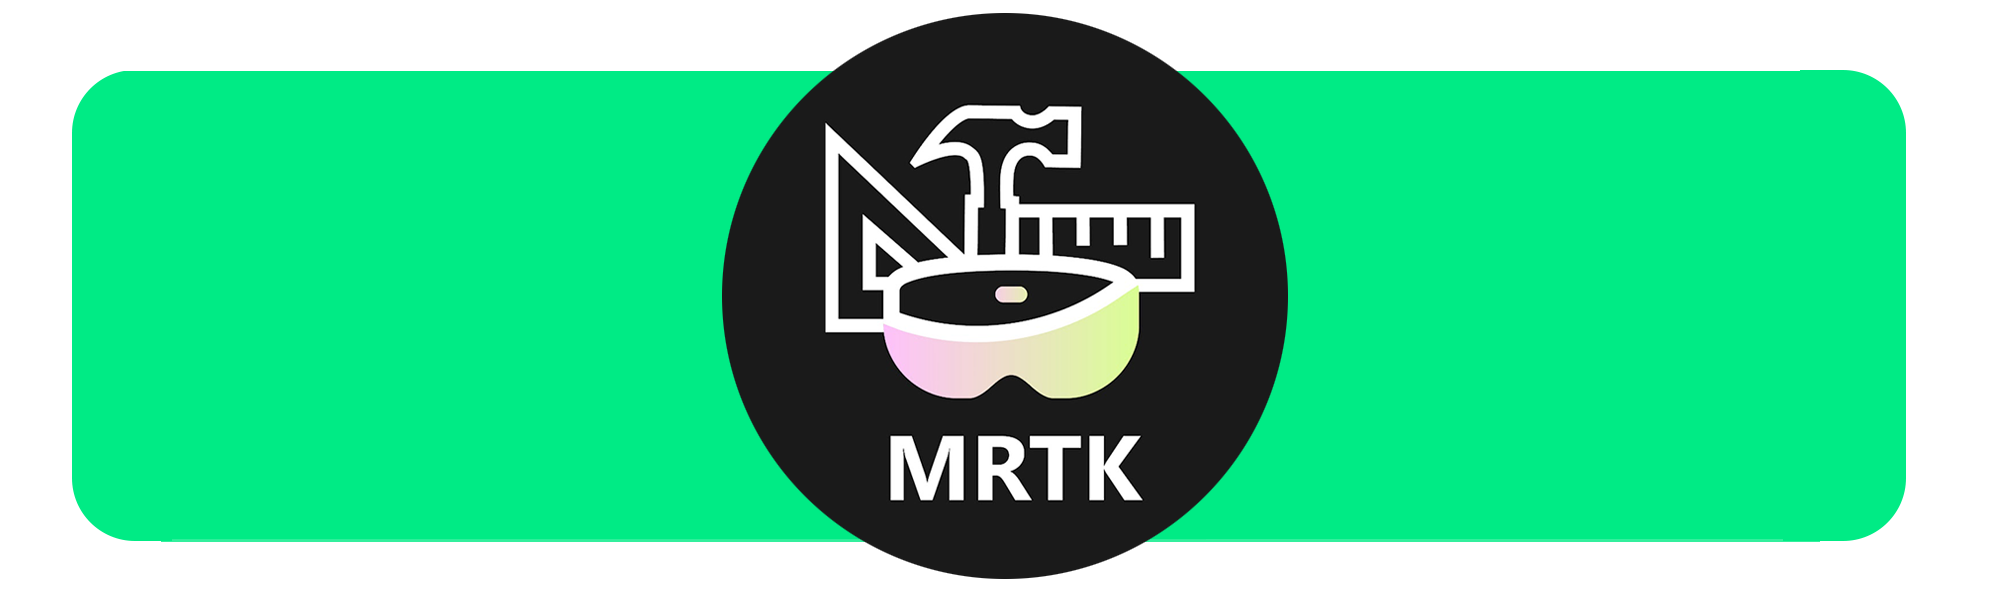 MRTK logo